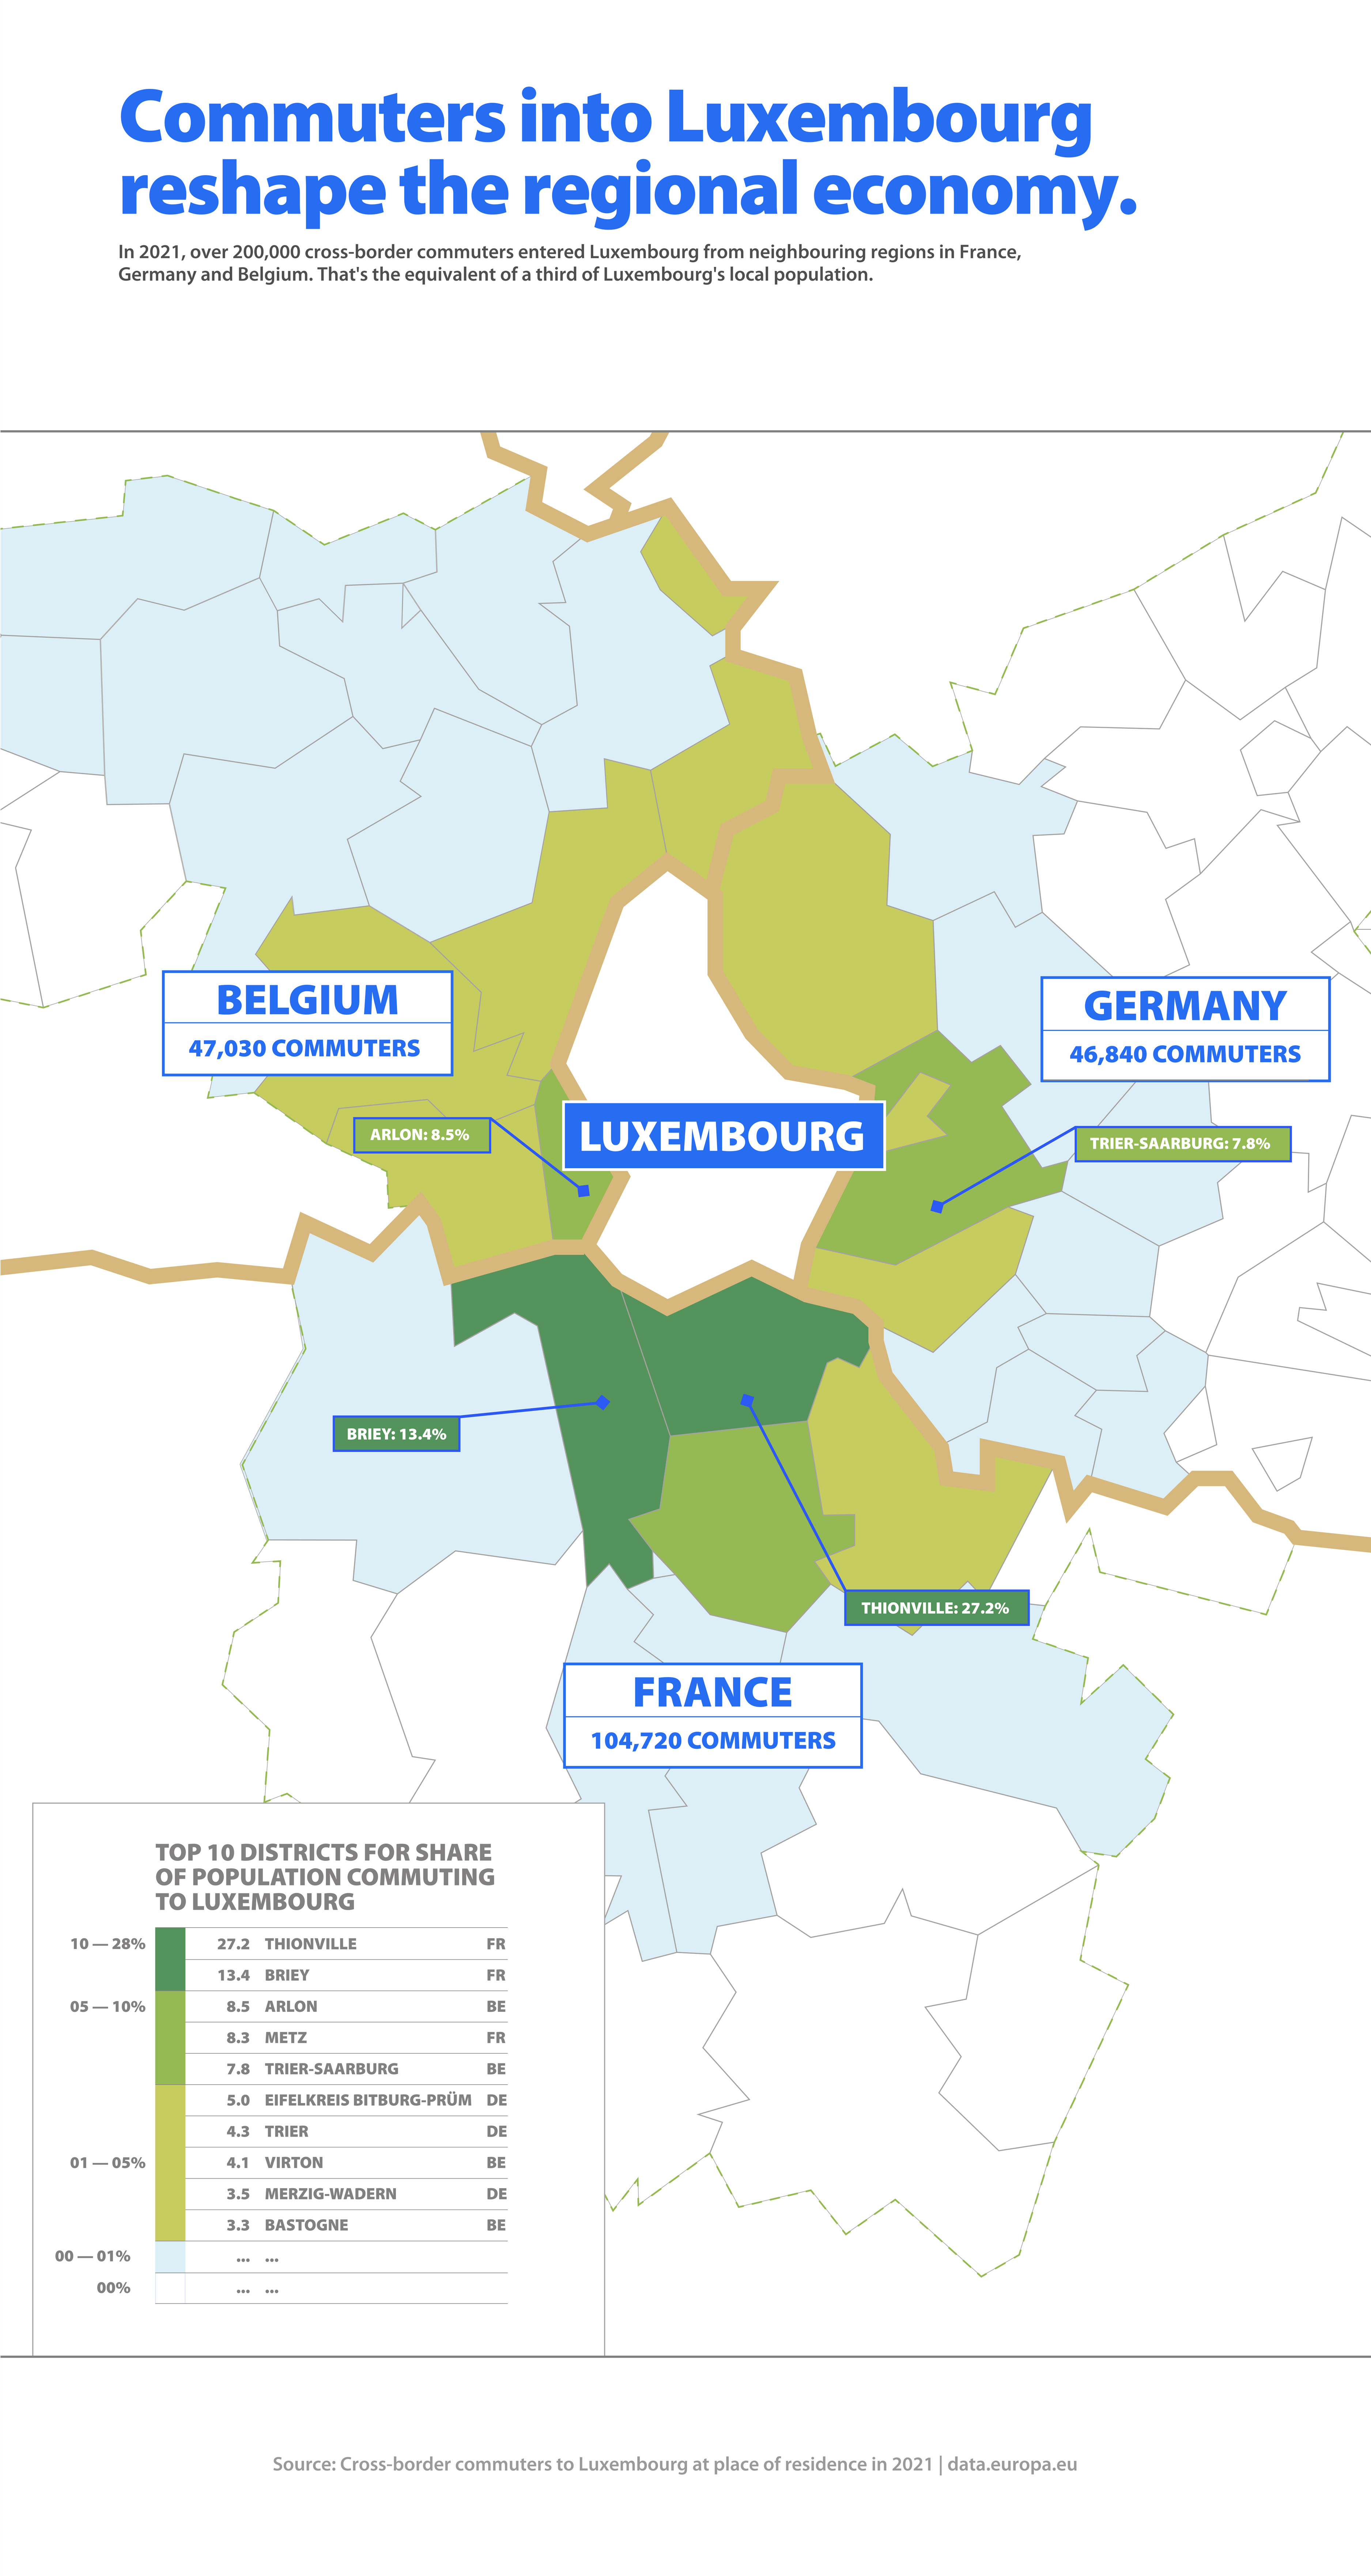 Viajeros transfronterizos de Bélgica, Alemania y Francia a Luxemburgo desde regiones limítrofes en 2021